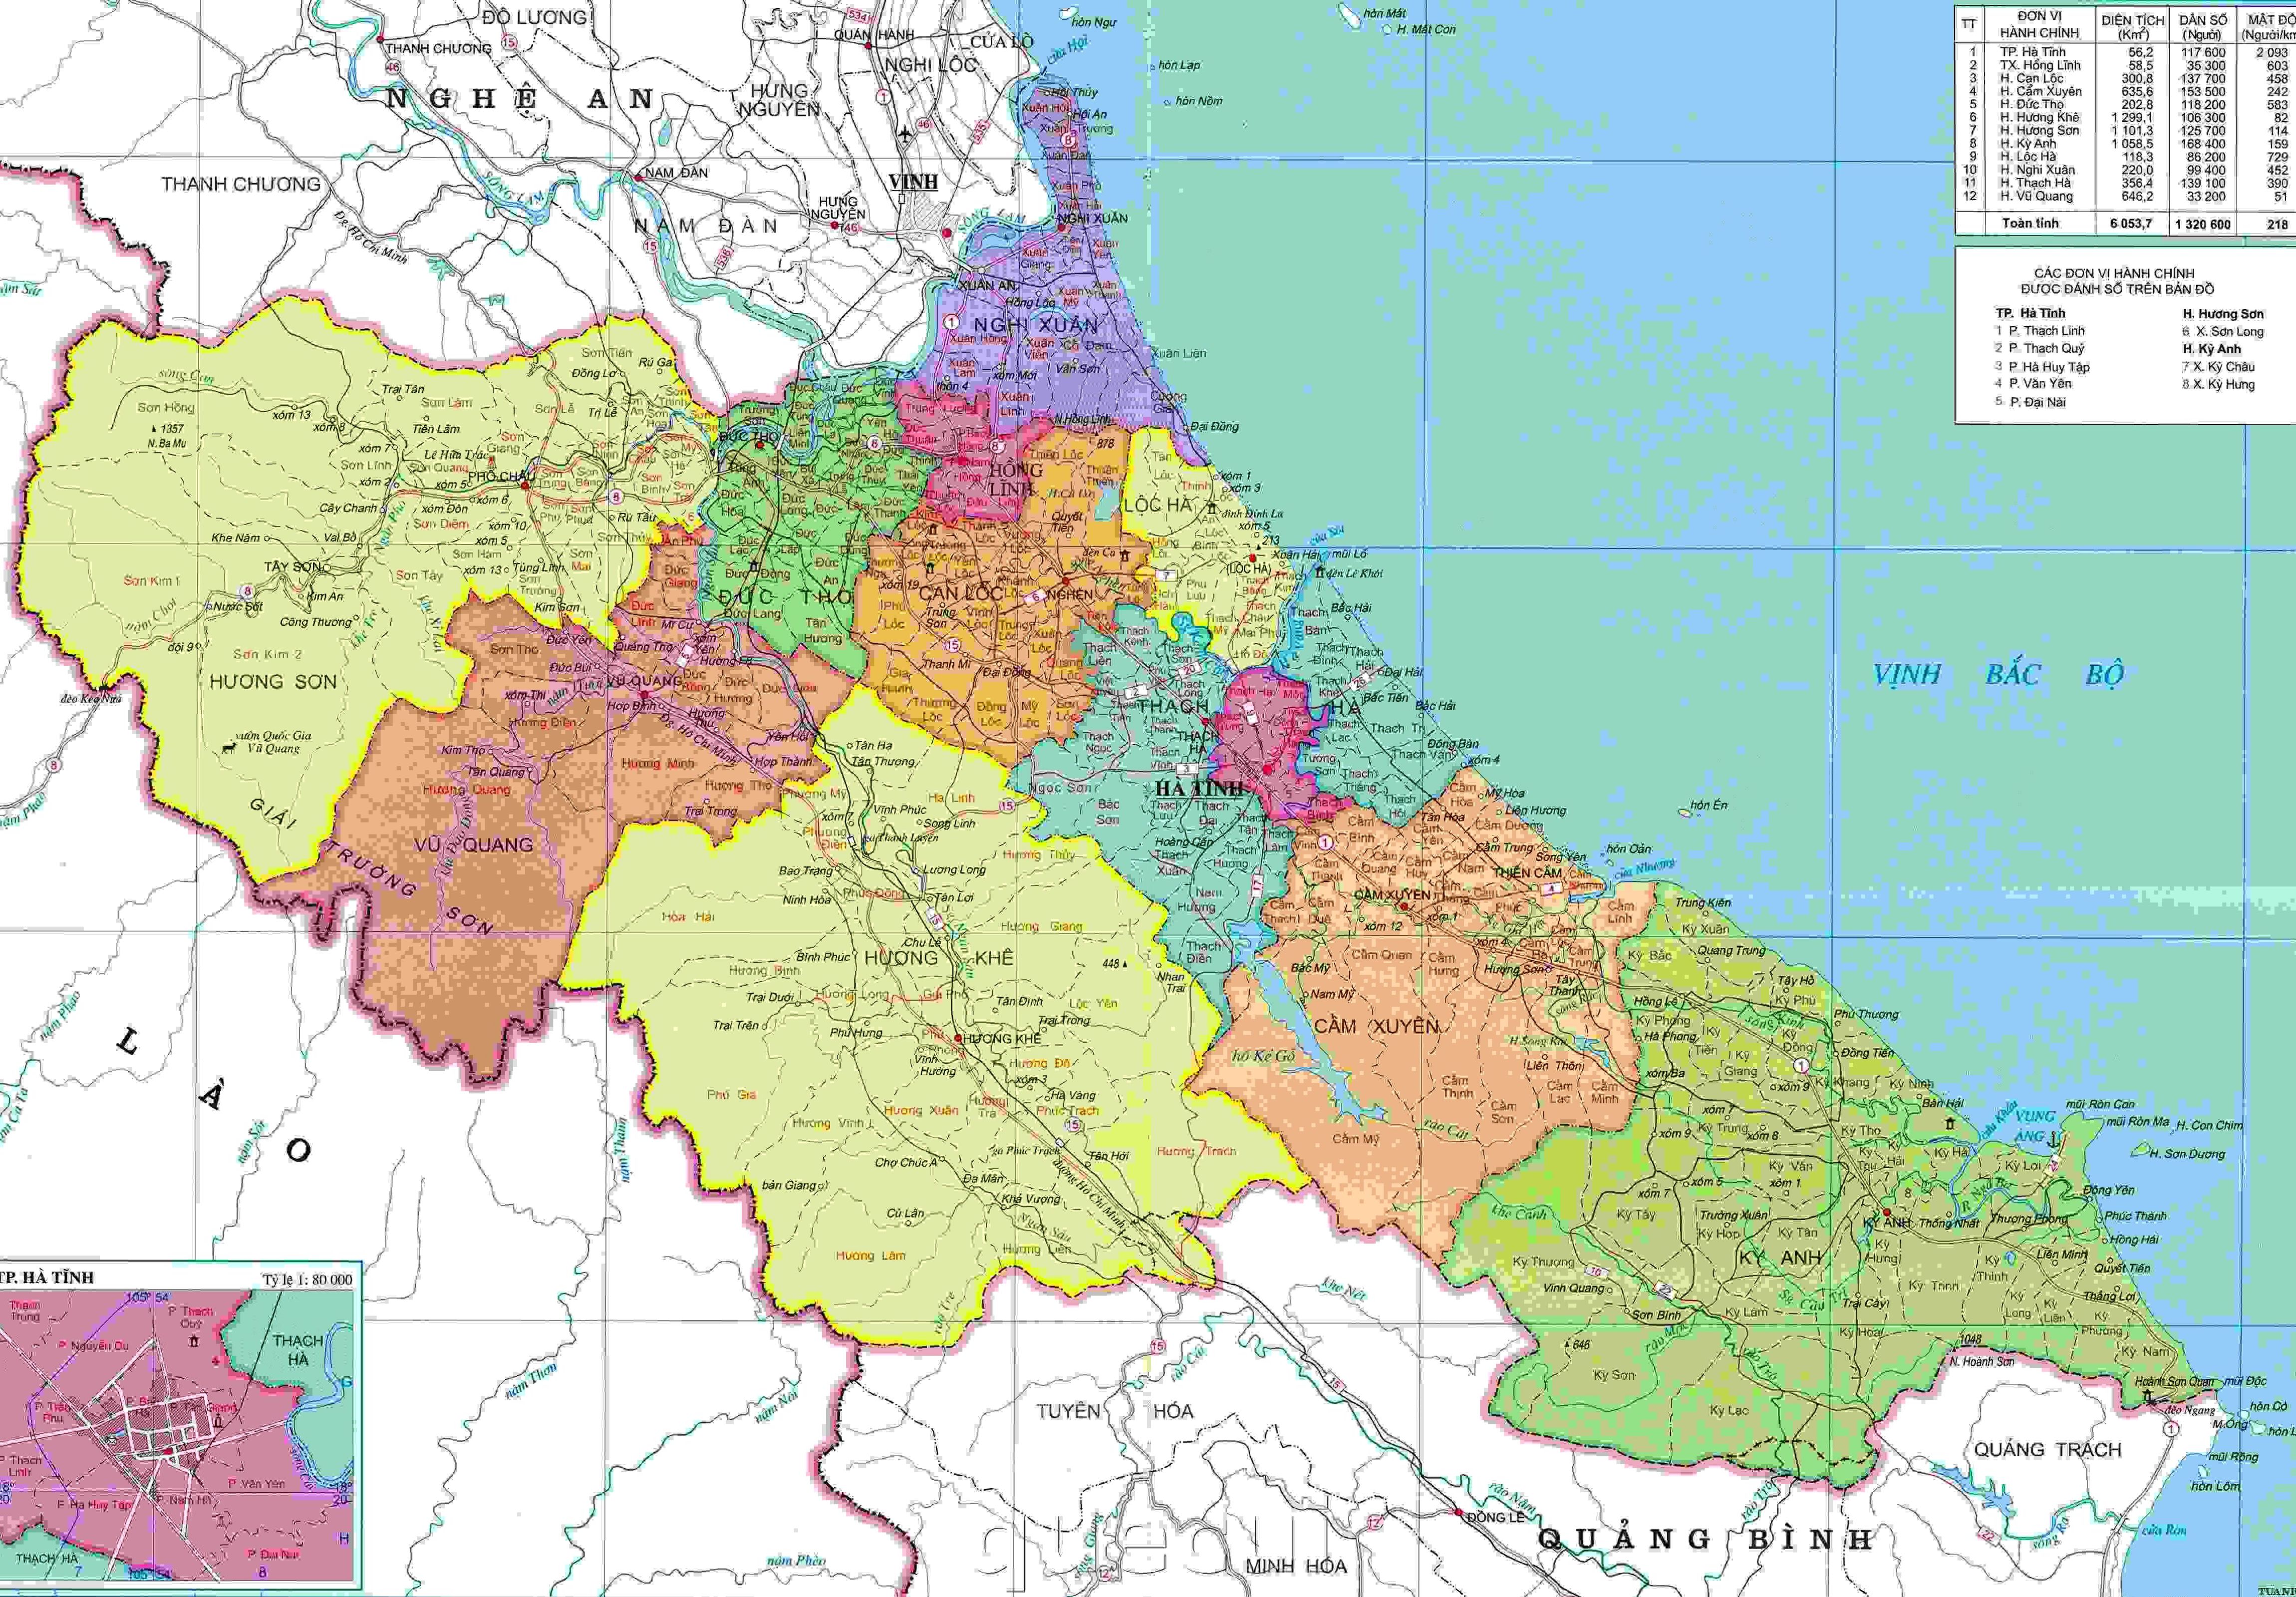 Bản đồ hành chính tỉnh Hà Tĩnh năm 2024 sẽ giúp bạn tìm hiểu về các khu vực phát triển mạnh và nơi có nhiều cơ hội kinh doanh. Hãy xem hình ảnh chi tiết để hiểu rõ hơn về bản đồ này.